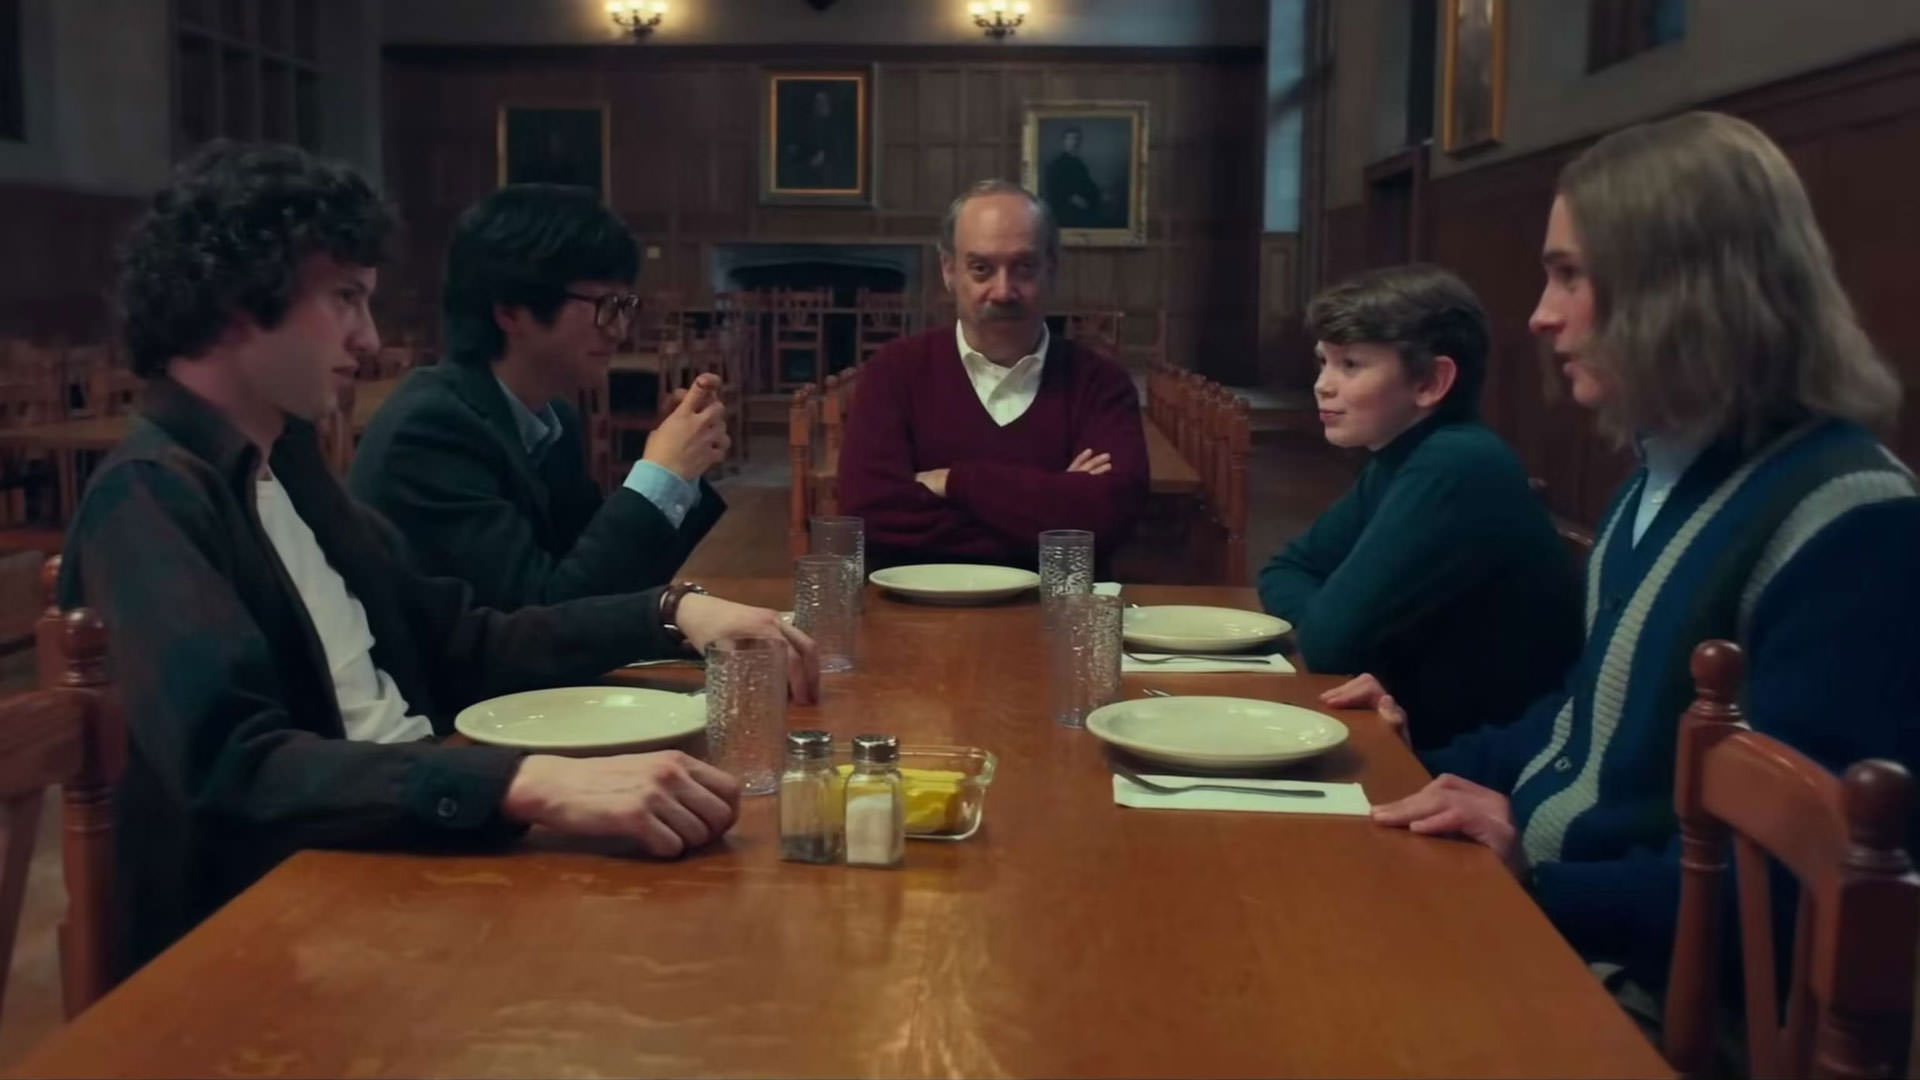 پل جیاماتی در صحنه ای از فیلم بازماندگان به کارگردانی الکساندر پین در کنار گروهی از نوجوانان روی میز مدرسه نشسته است.